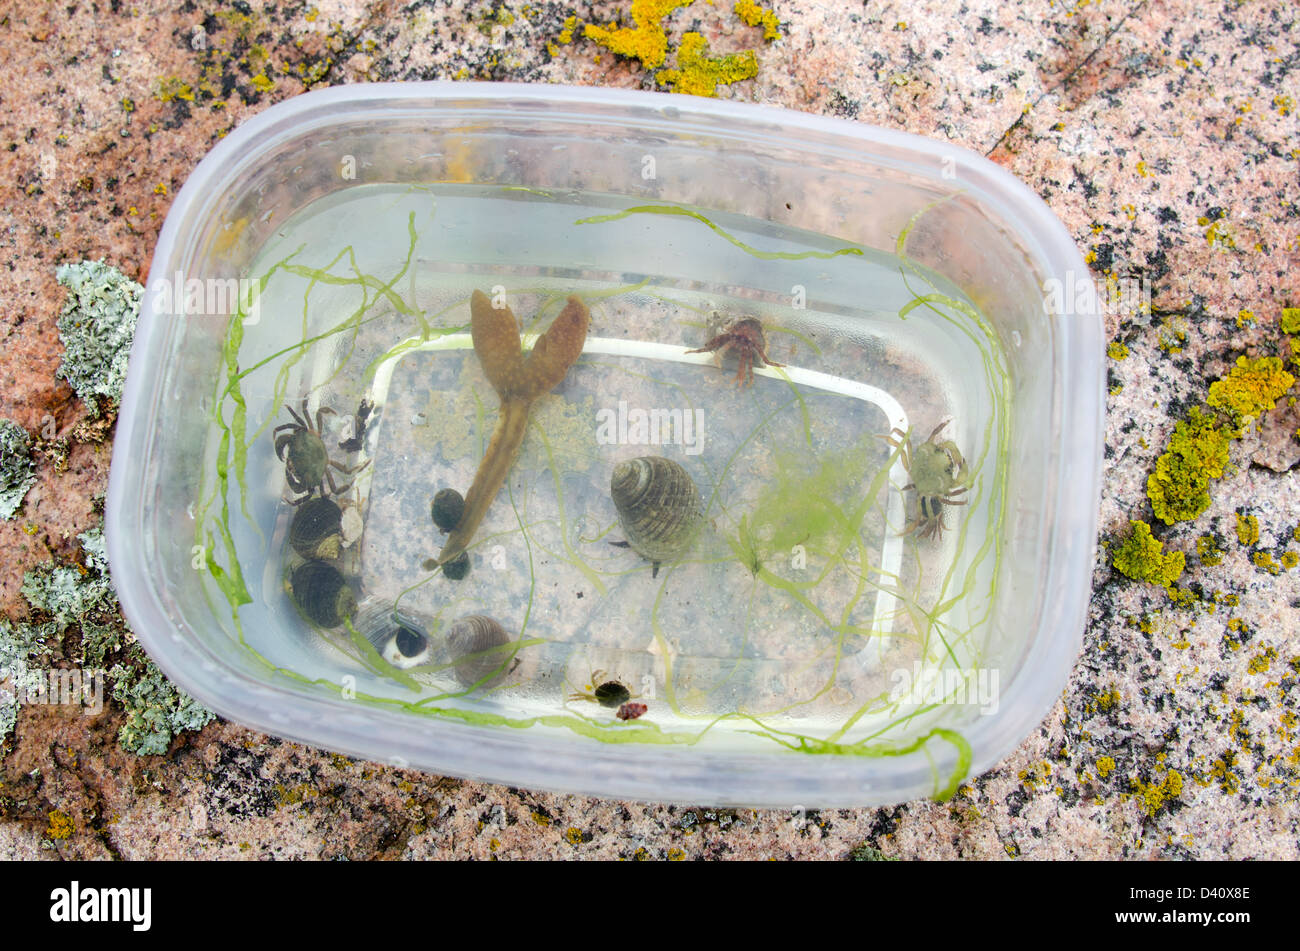 L'ermite, crabes, bigorneaux, et les algues recueillies sur un voyage en biologie marine dans l'Acadia National Park, Maine. Banque D'Images